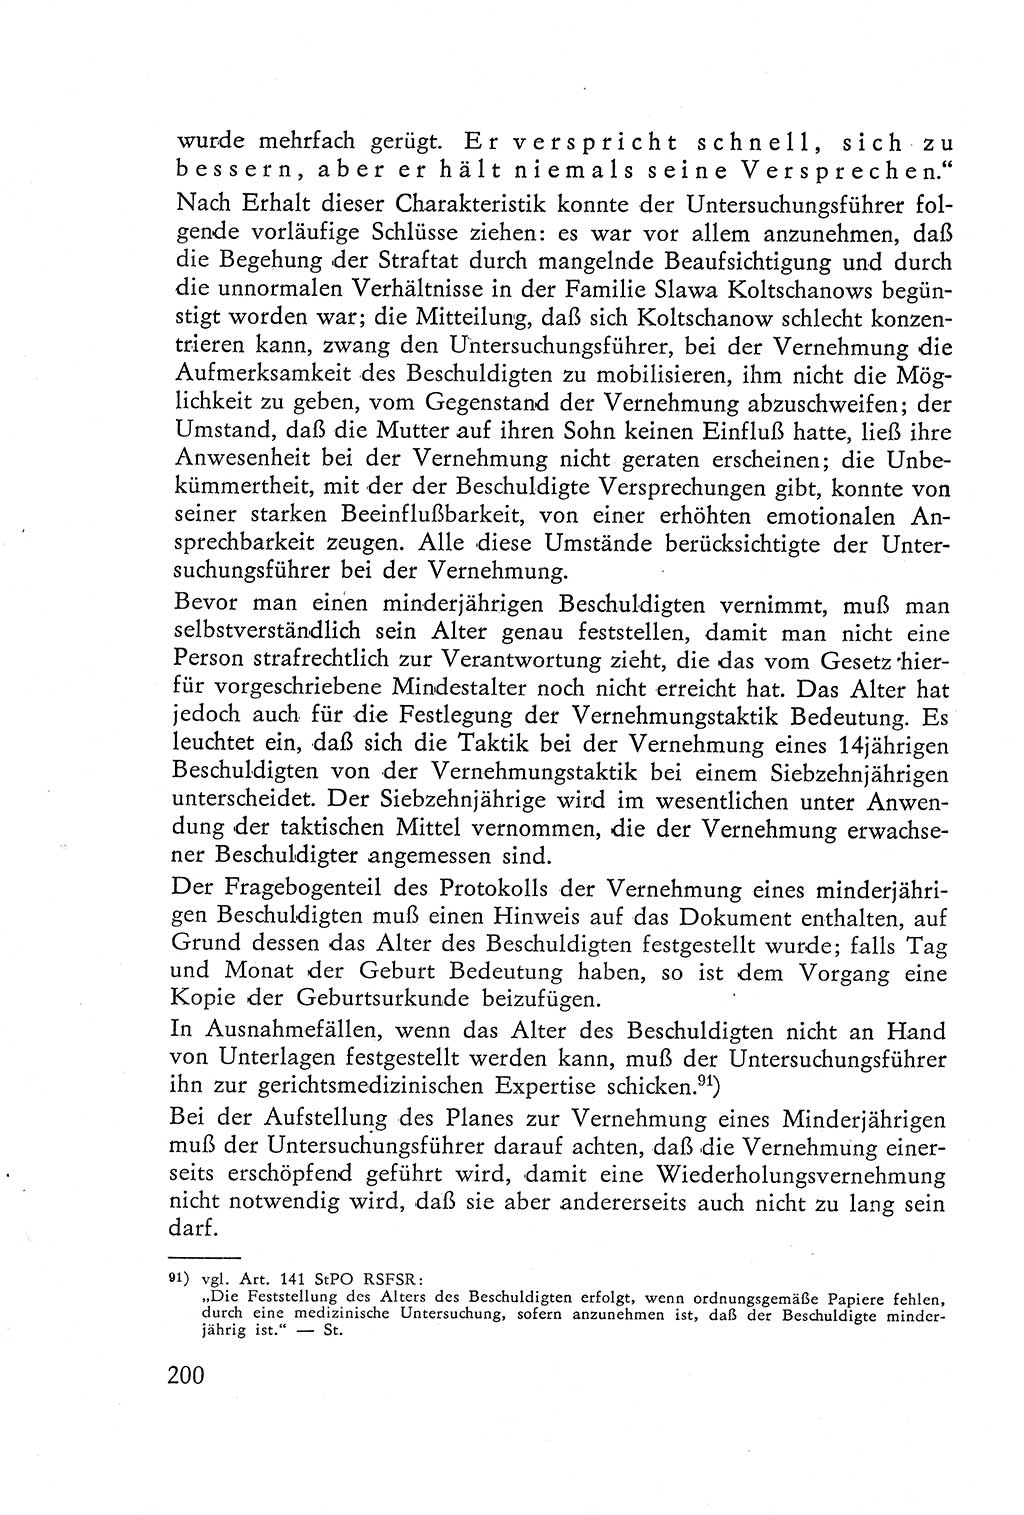 Die Vernehmung [Deutsche Demokratische Republik (DDR)] 1960, Seite 200 (Vern. DDR 1960, S. 200)